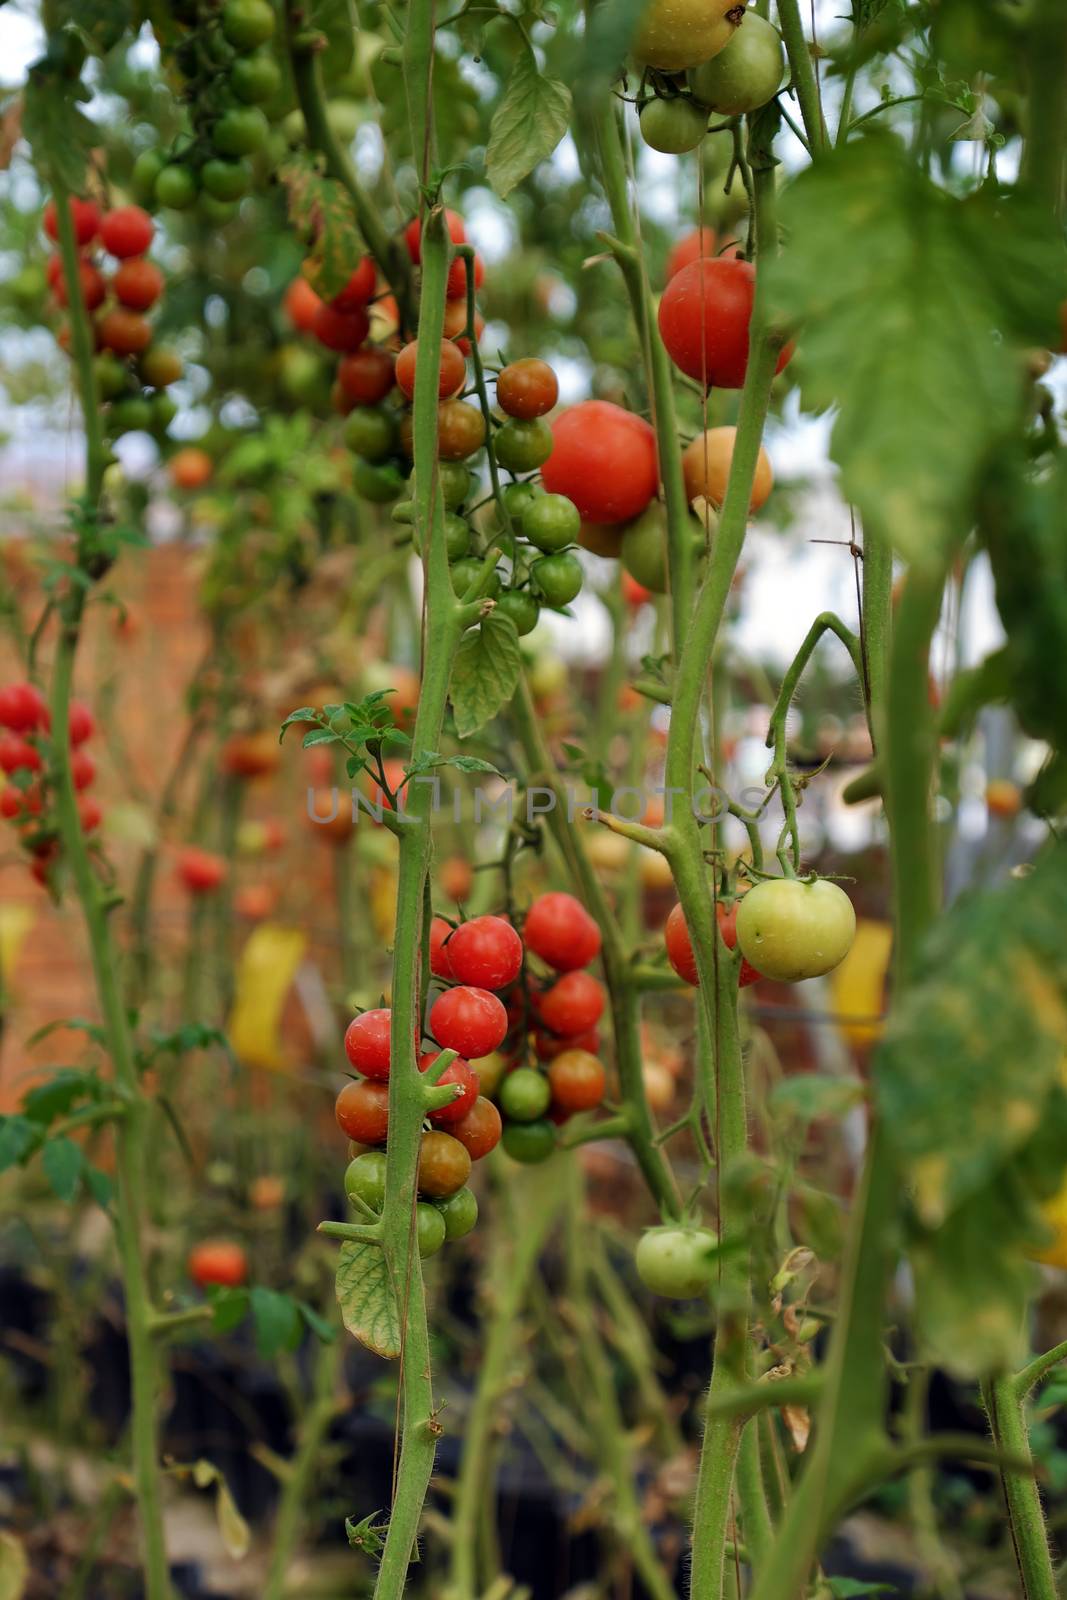 Safe vegetable farm, Da Lat tomato garden by xuanhuongho